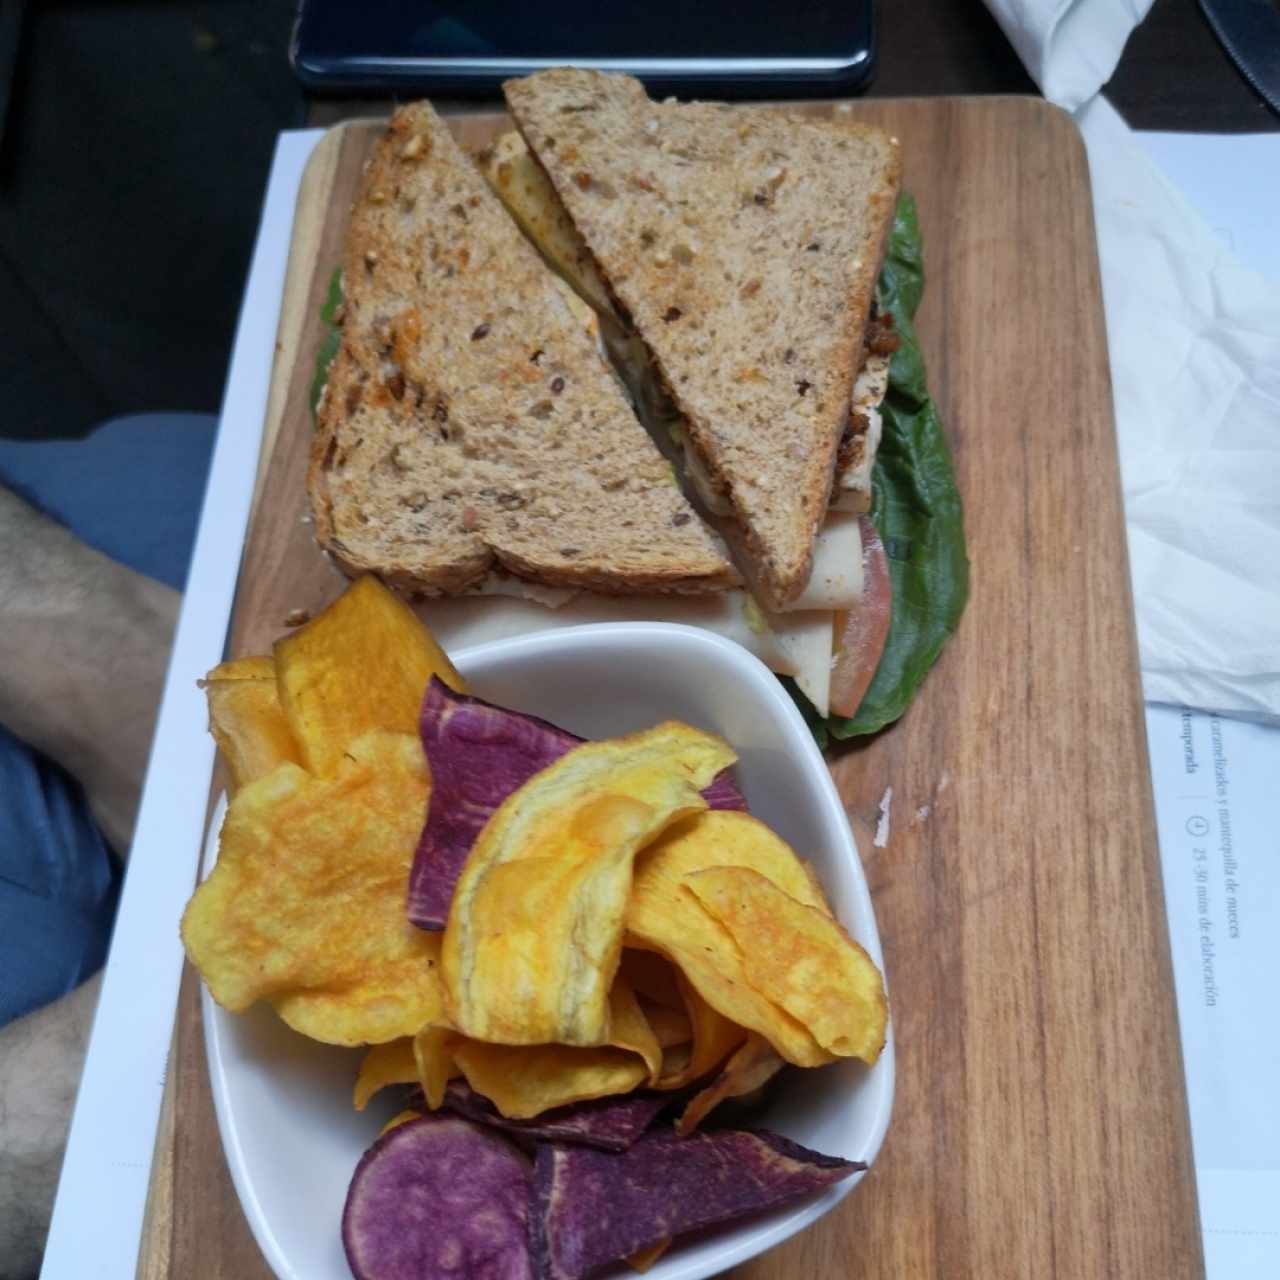 Sandwich de Pavo